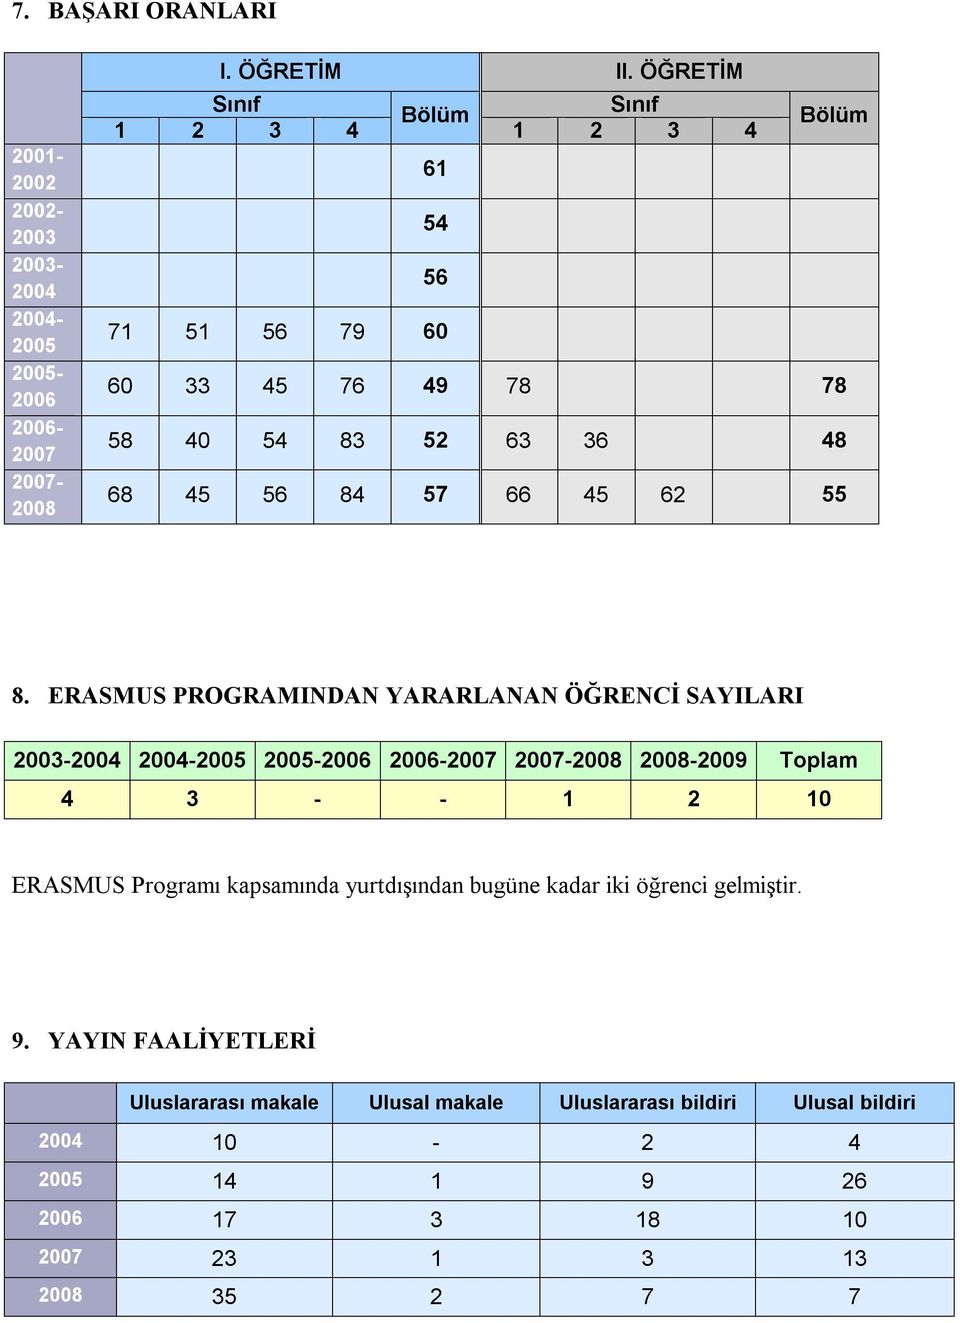 ERASMUS PROGRAMINDAN YARARLANAN ÖĞRENCİ SAYILARI 2003-2004 2004-2005 2005-2006 2006-2007 2007-2008 2008-2009 Toplam 4 3 - - 1 2 10 ERASMUS Programı